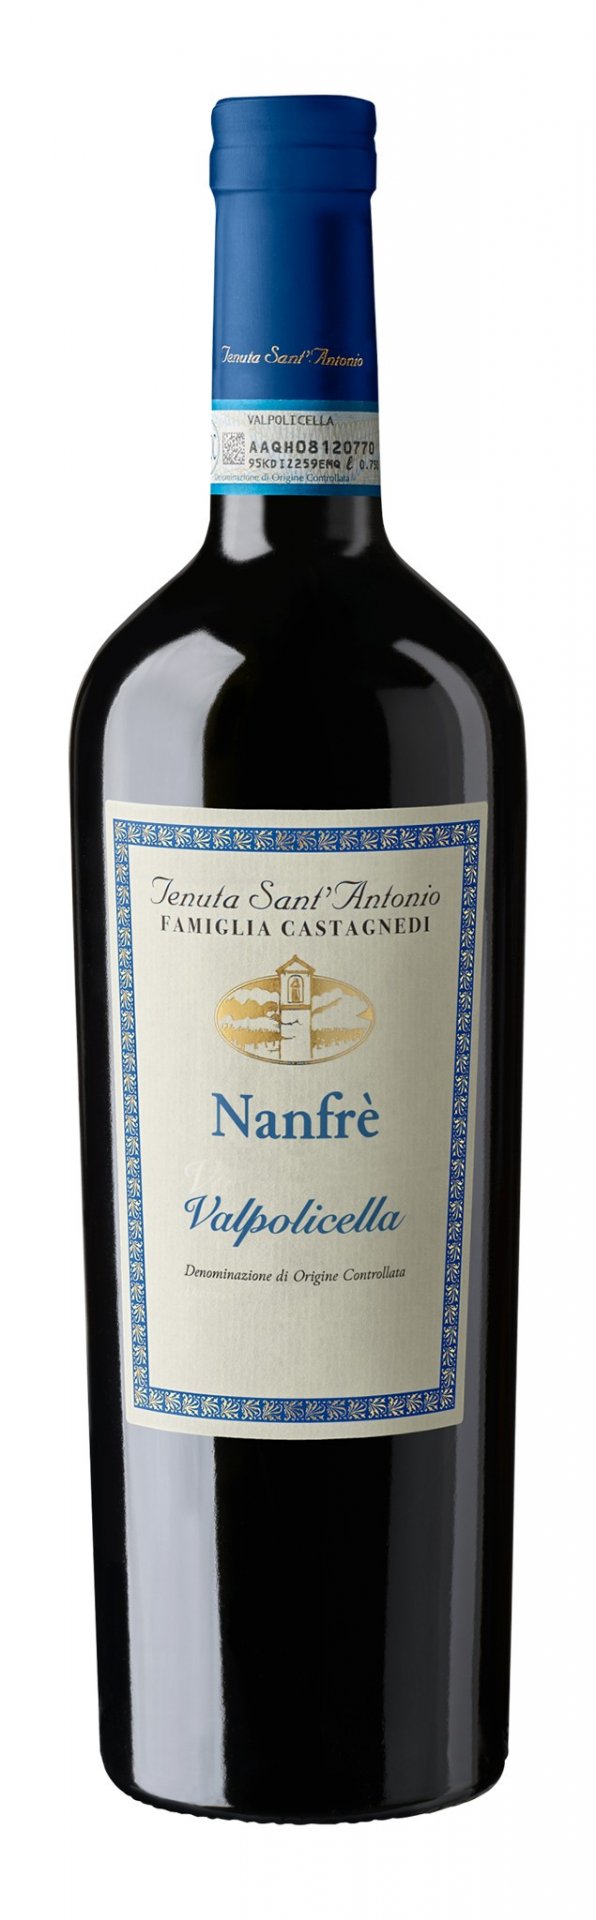 Sant Antonio Valpolicella Nanfre